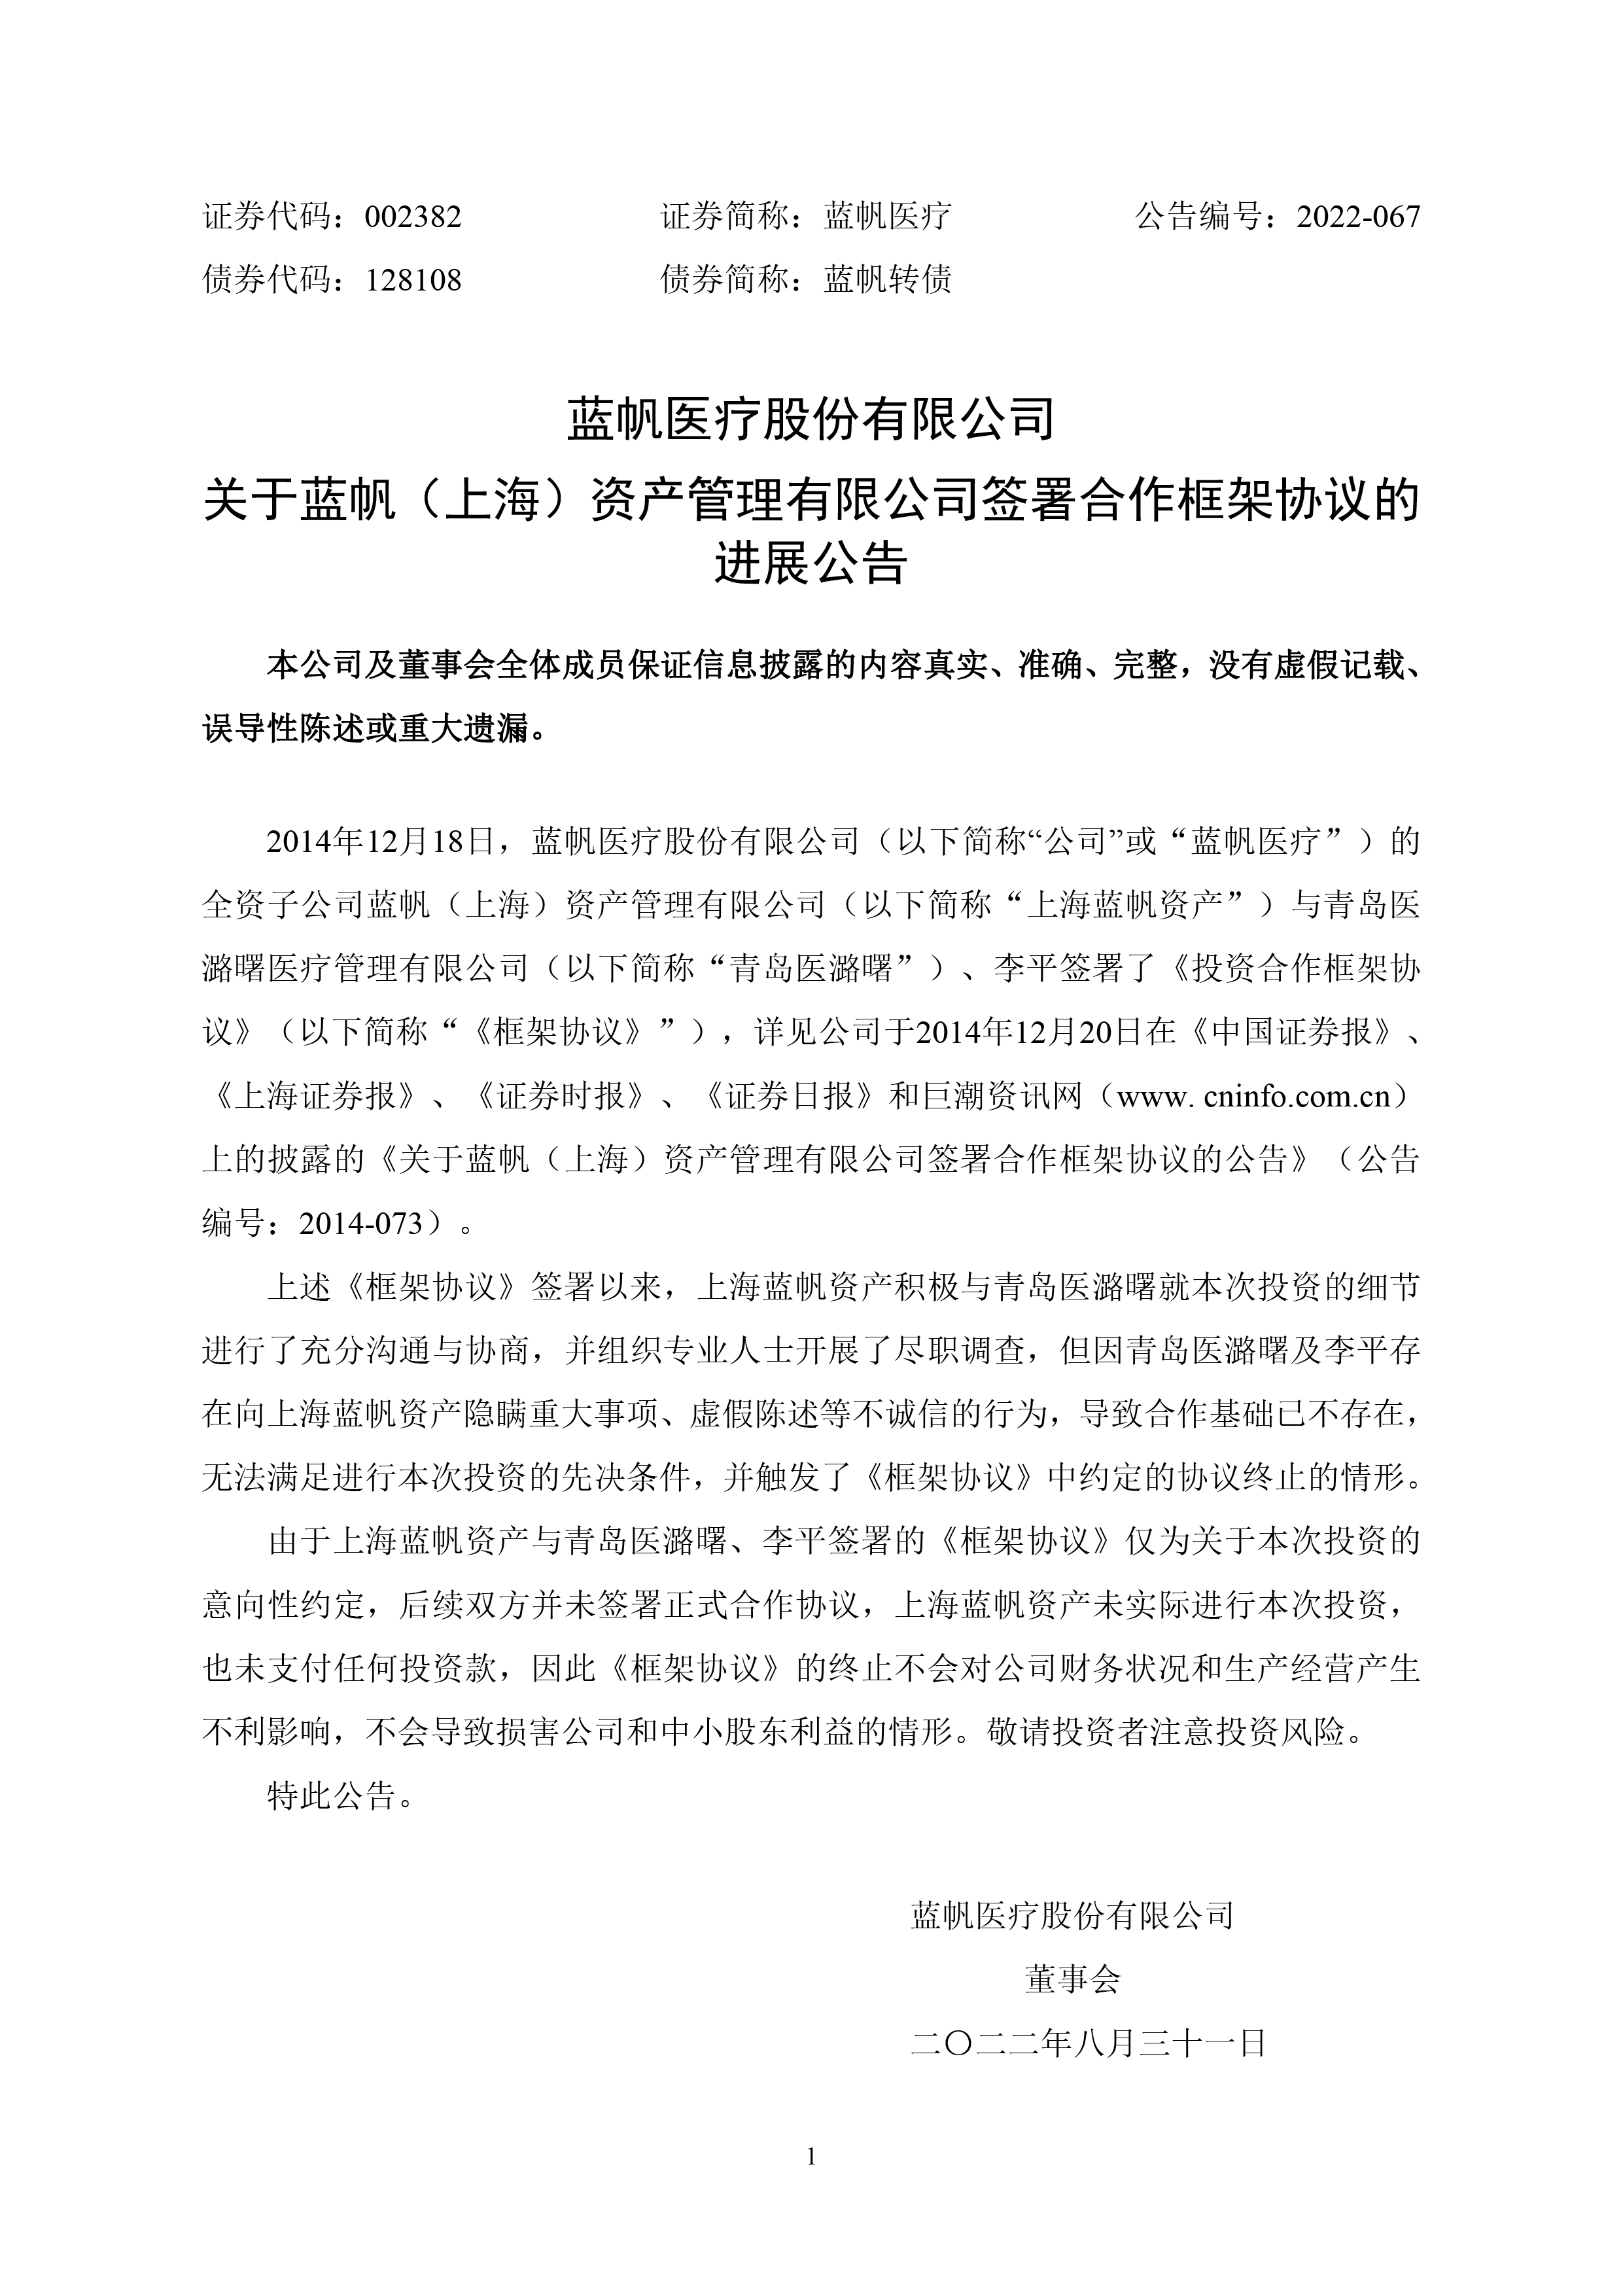 2022-067 关于蓝帆（上海）资产管理有限公司签署合作框架协议的进展公告-01.png